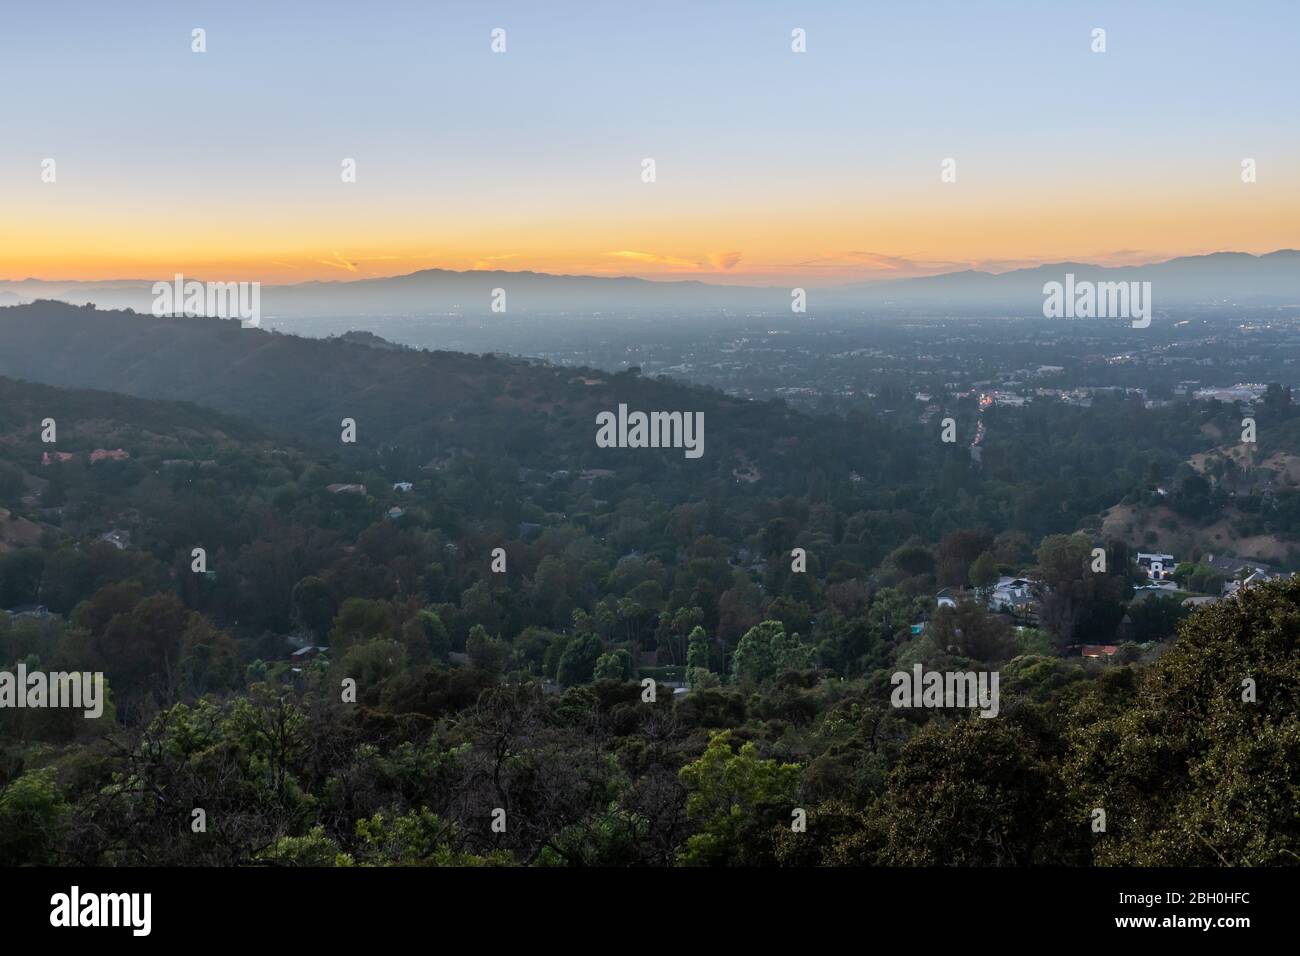 Vue panoramique sur la ville de Los Angeles depuis Mulholland Drive, vue panoramique au coucher du soleil Banque D'Images